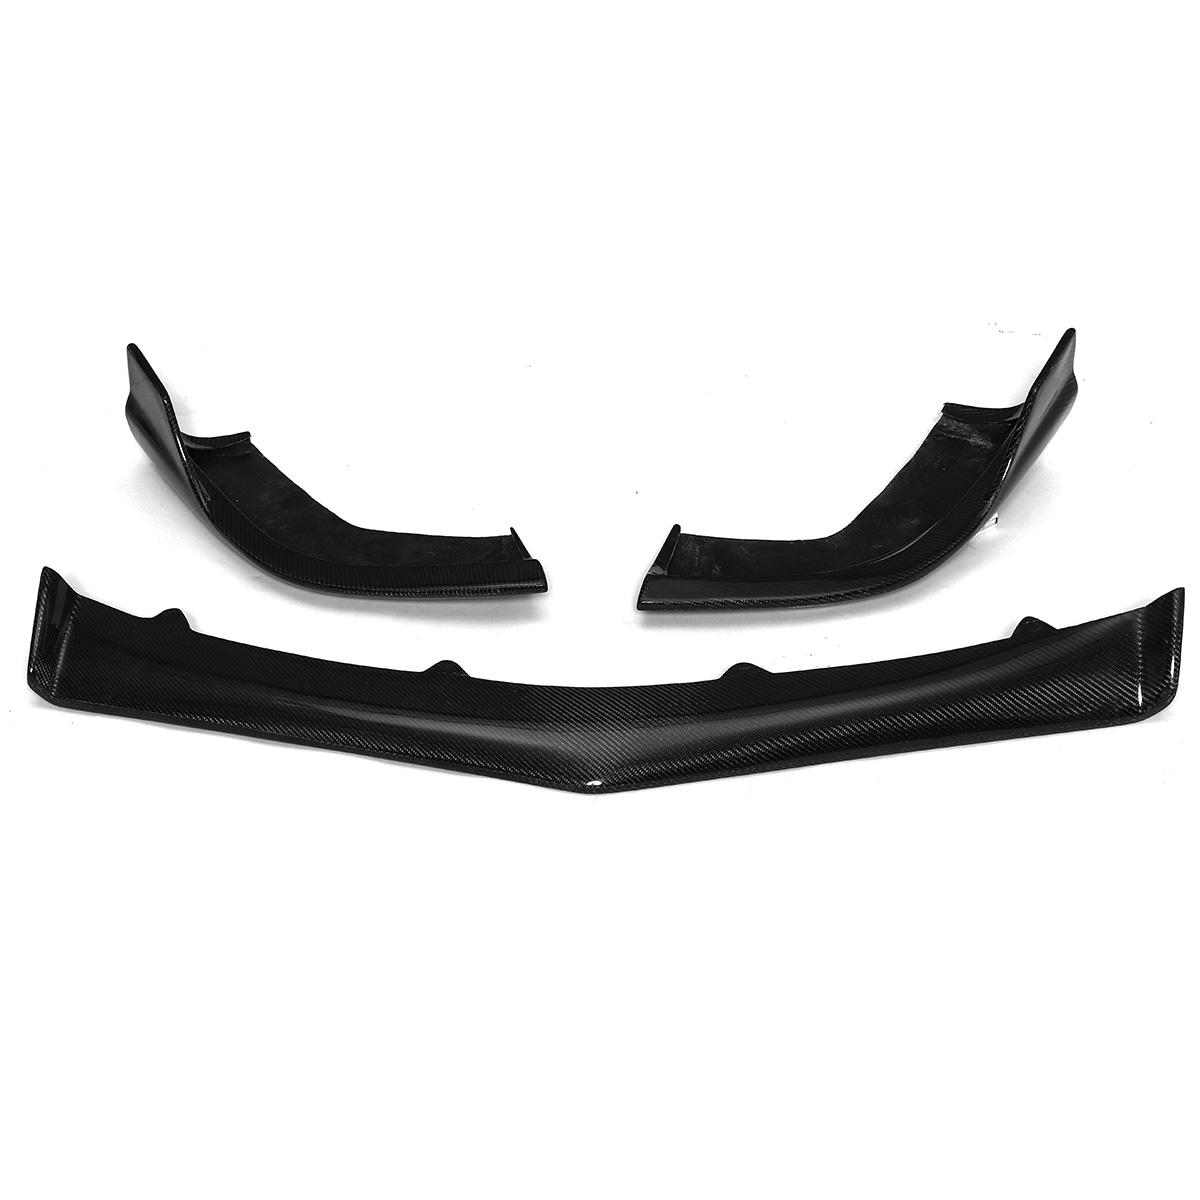 

Car Carbon Fiber Front Bumper Lip Kits For Mercedes Benz W218 CLS63 R Style Bumper Protector